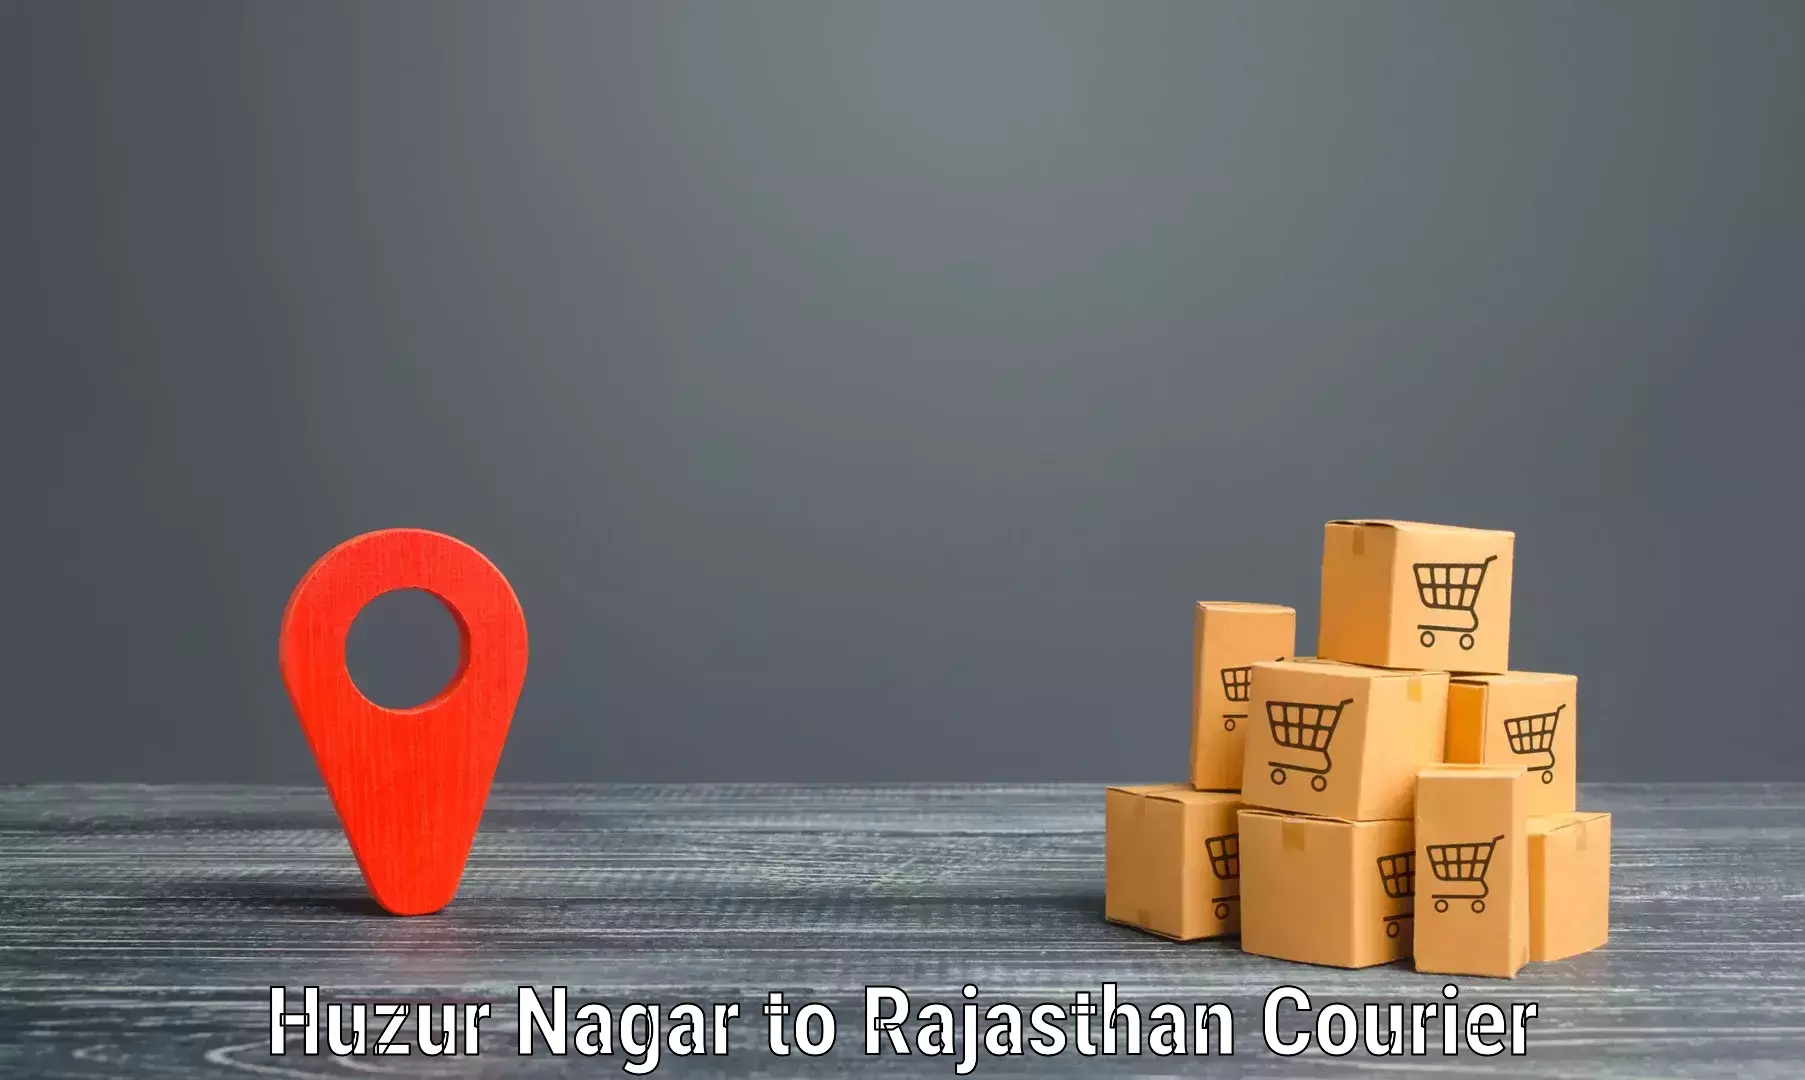 Efficient shipping platforms Huzur Nagar to Pratapgarh Rajasthan